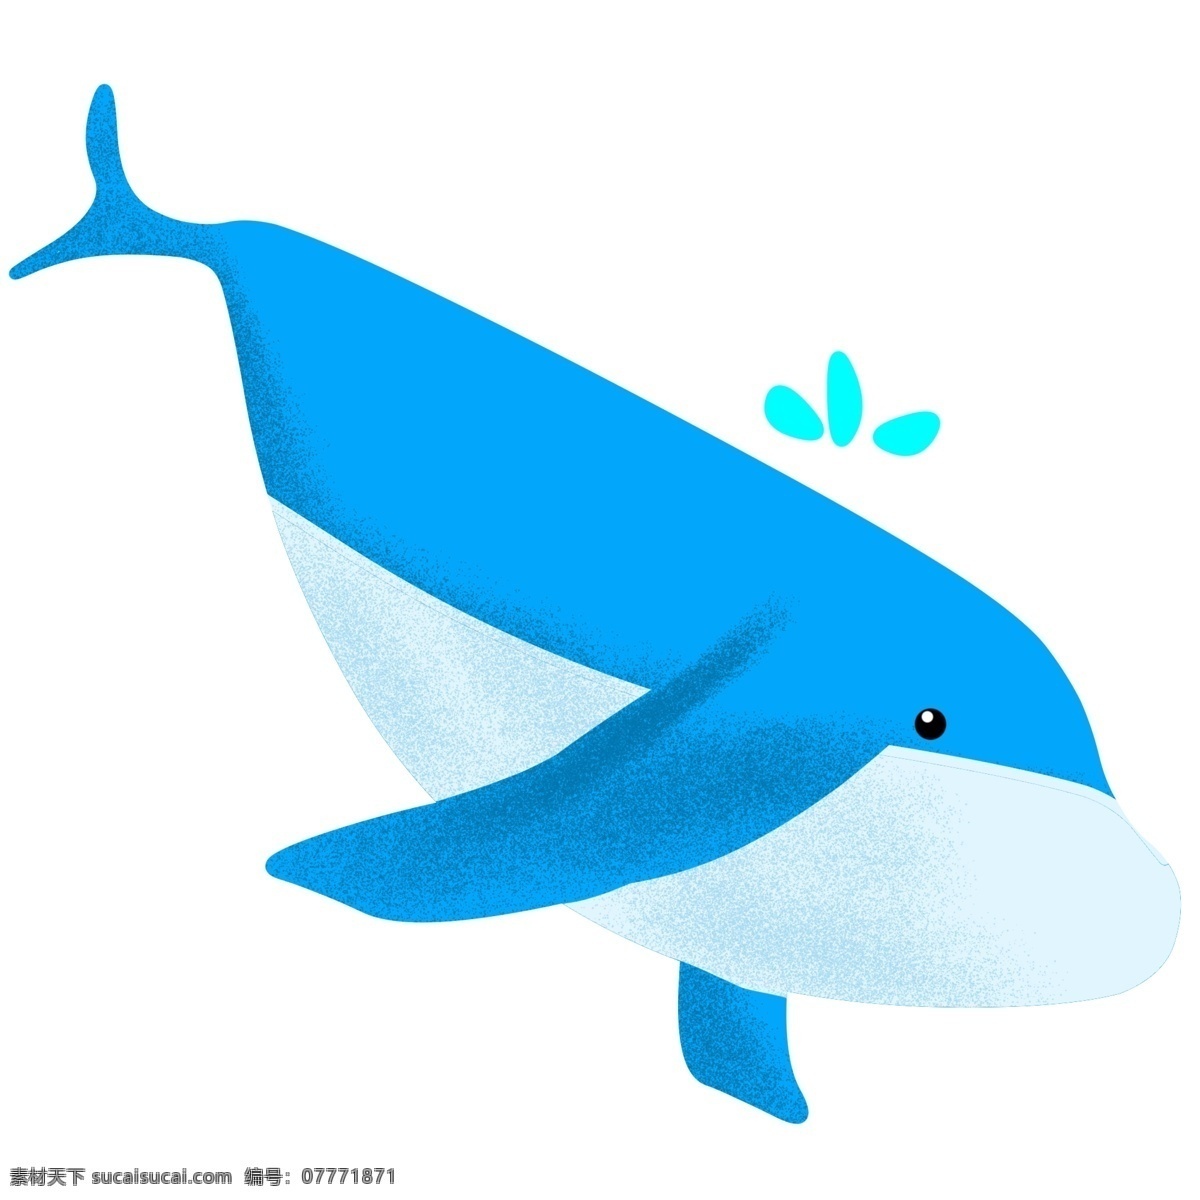 蓝色 可爱 大 鲸鱼 插画 蓝鲸 可爱的鲸鱼 大鲸鱼插画 喷水鲸鱼 动物 蓝色的大鲸鱼 水中 游动 天蓝色的水滴